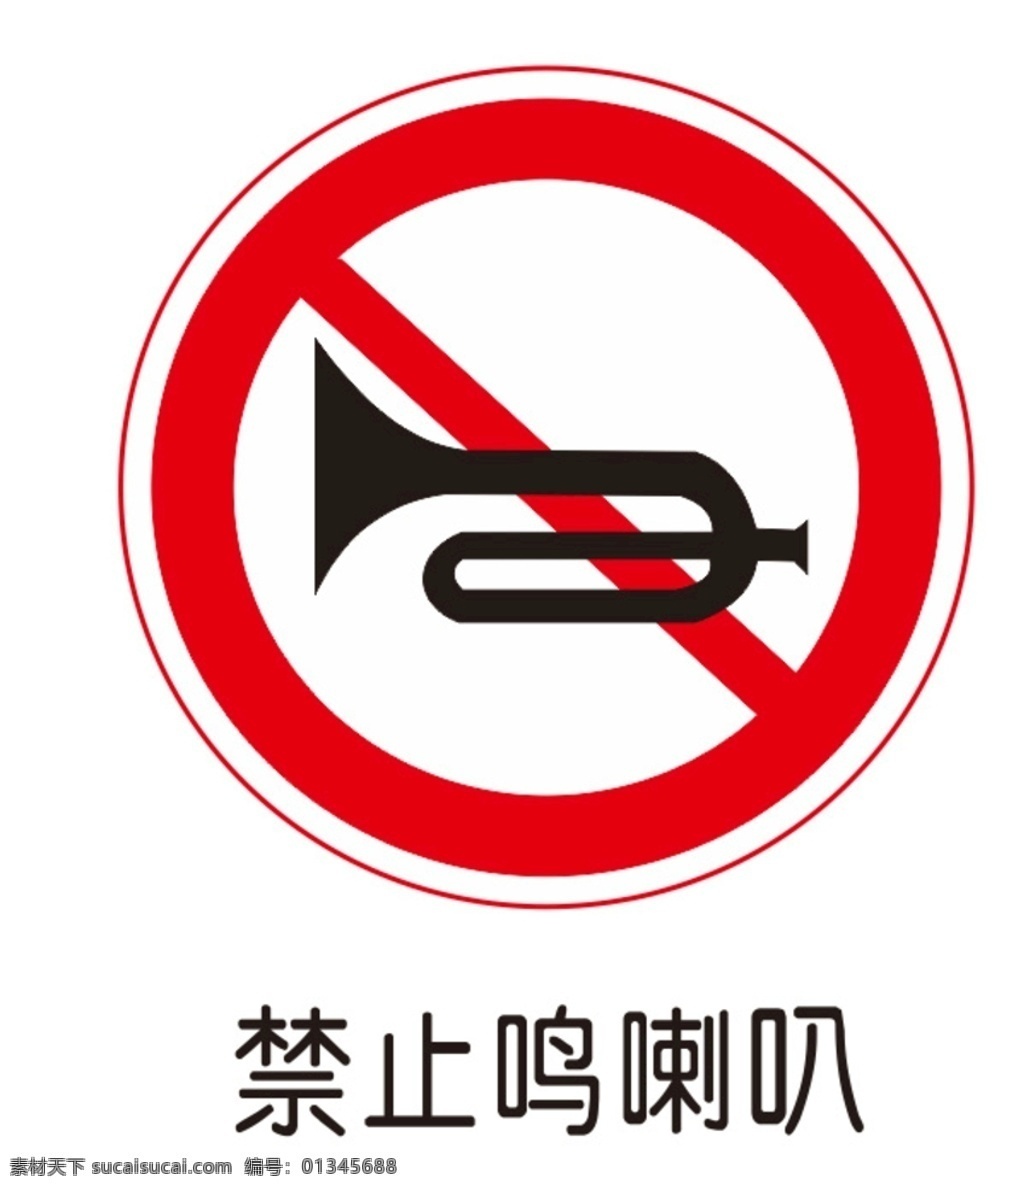 严禁鸣喇叭 交通标识牌 交通标示 禁止鸣喇叭 禁止转弯 禁止标识牌 不准鸣喇叭 禁止喇叭